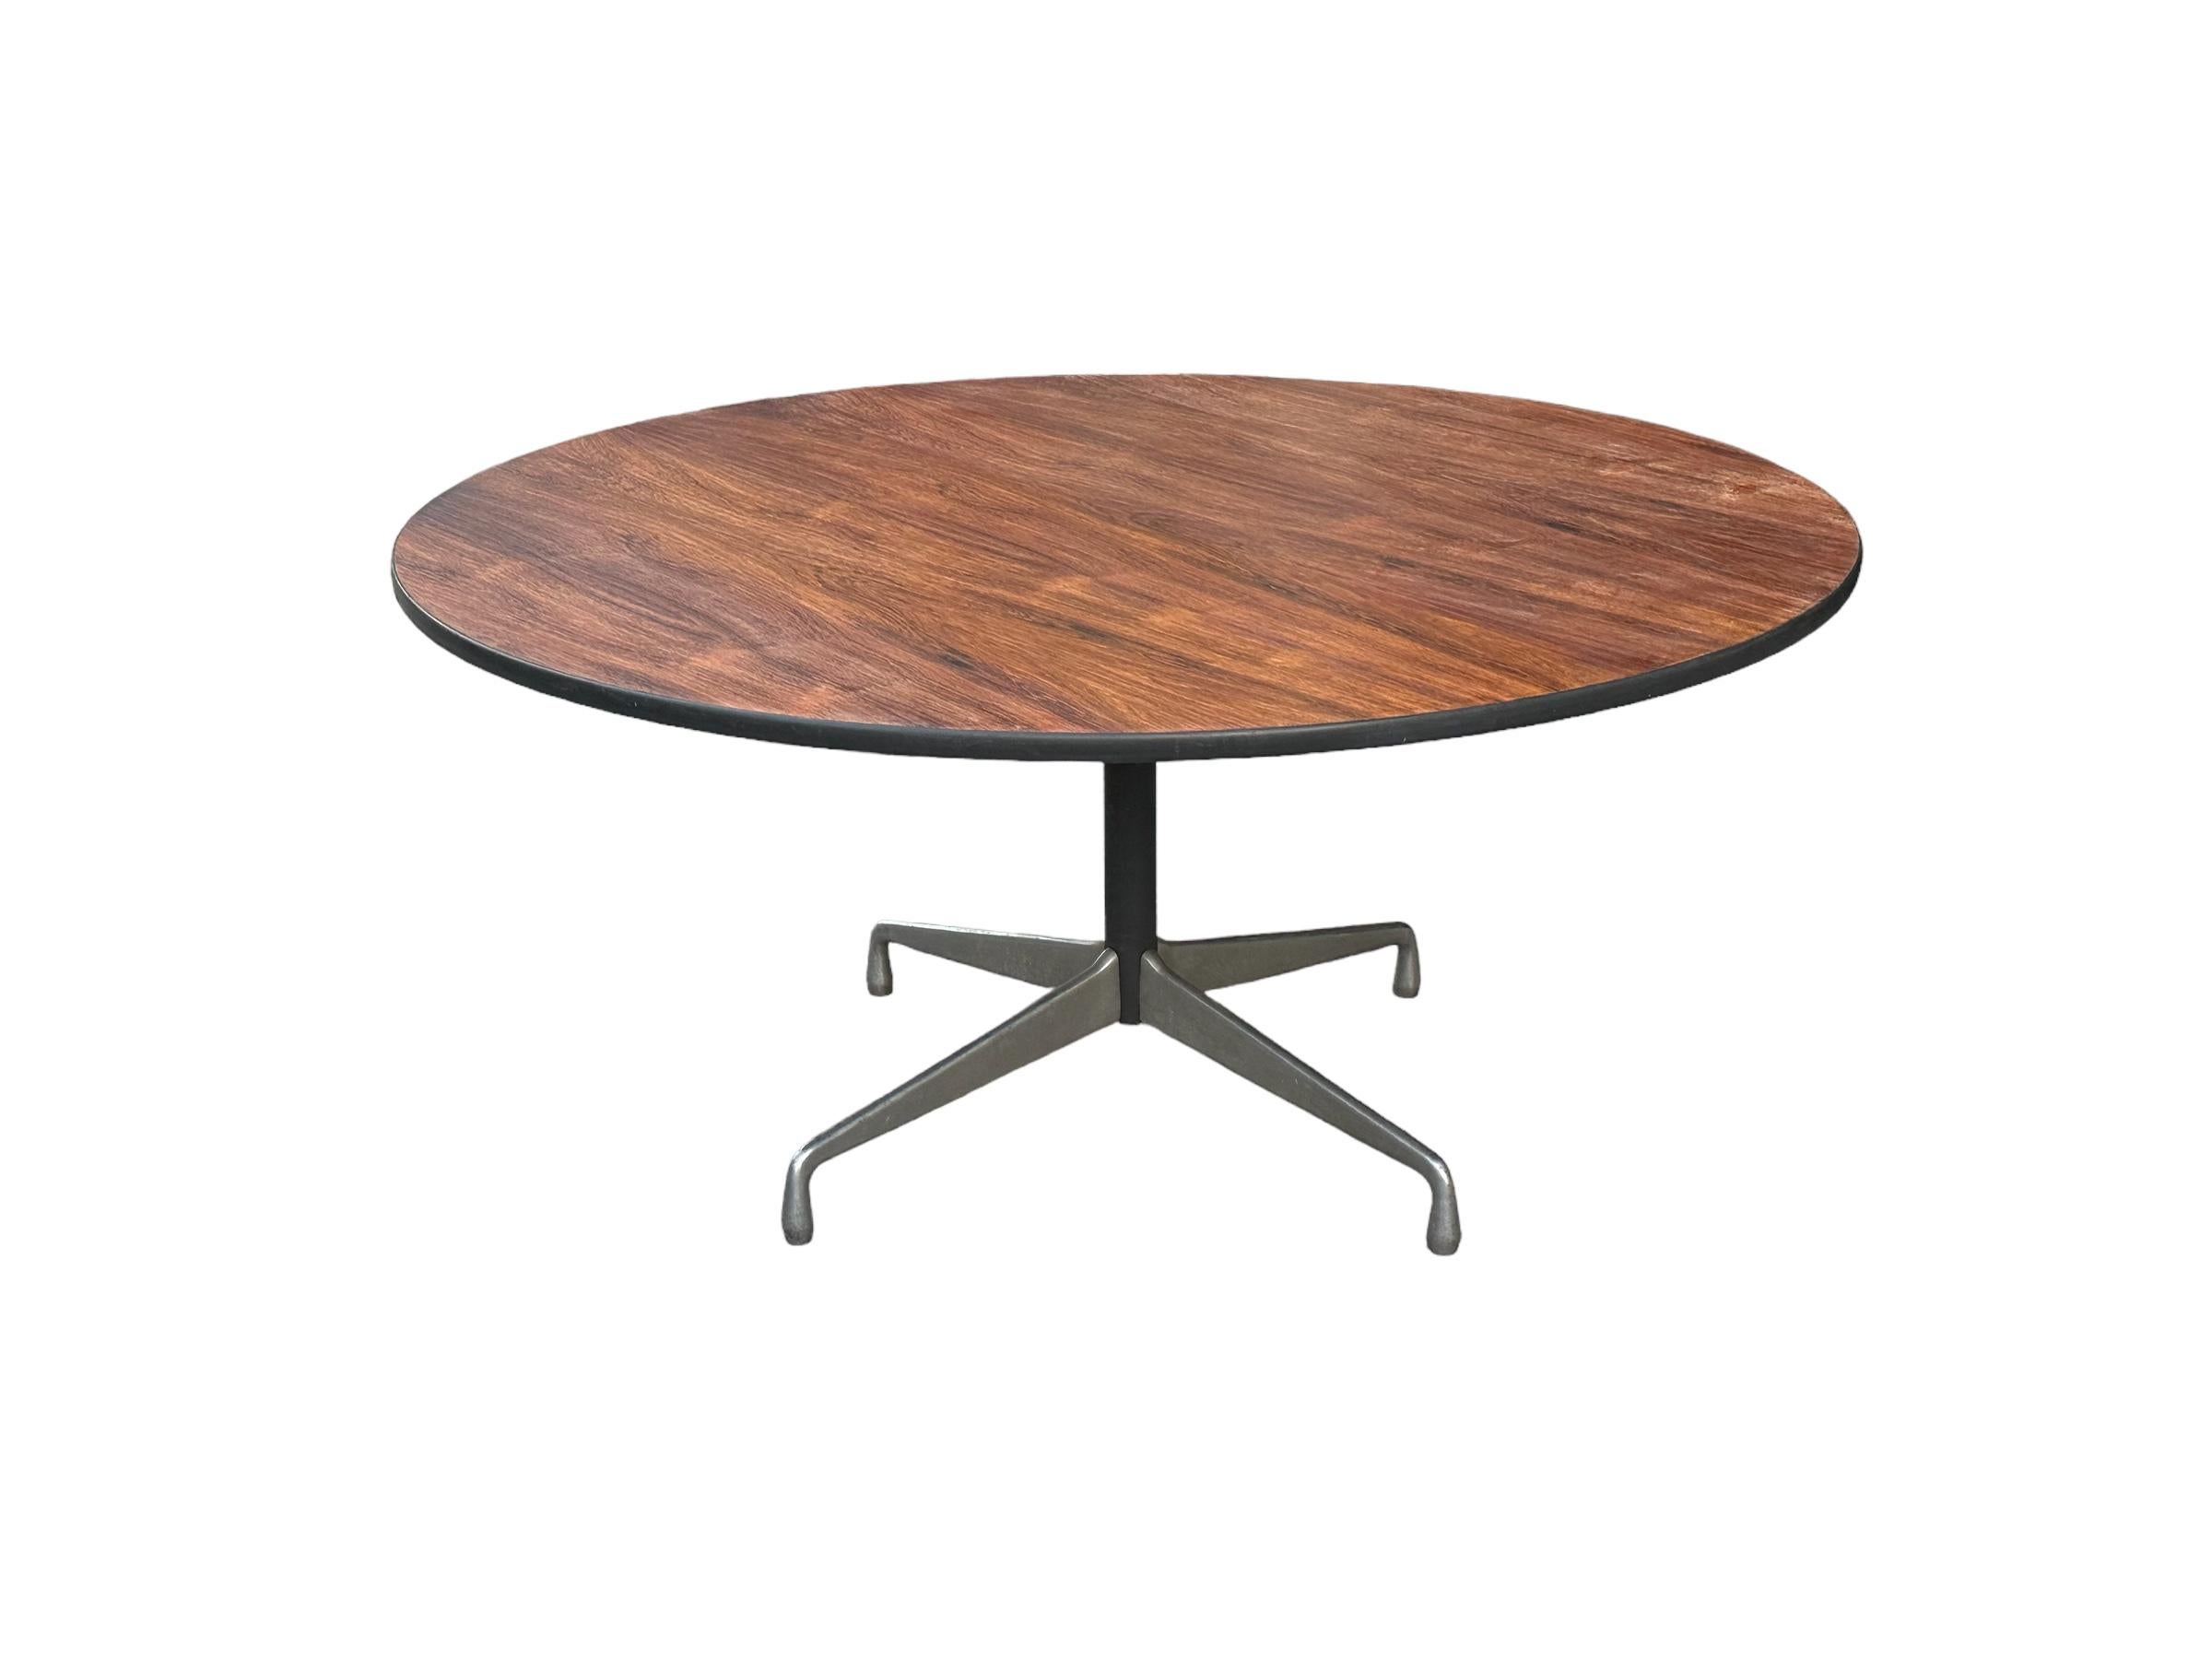 Rare grande table de salle à manger Eames personnalisée par Herman Miller. Surface circulaire lustrée en bois de rose brésilien sur des pieds en aluminium moulé. Des couleurs et des motifs de grain incroyables. D'un diamètre de 5 pieds, il peut